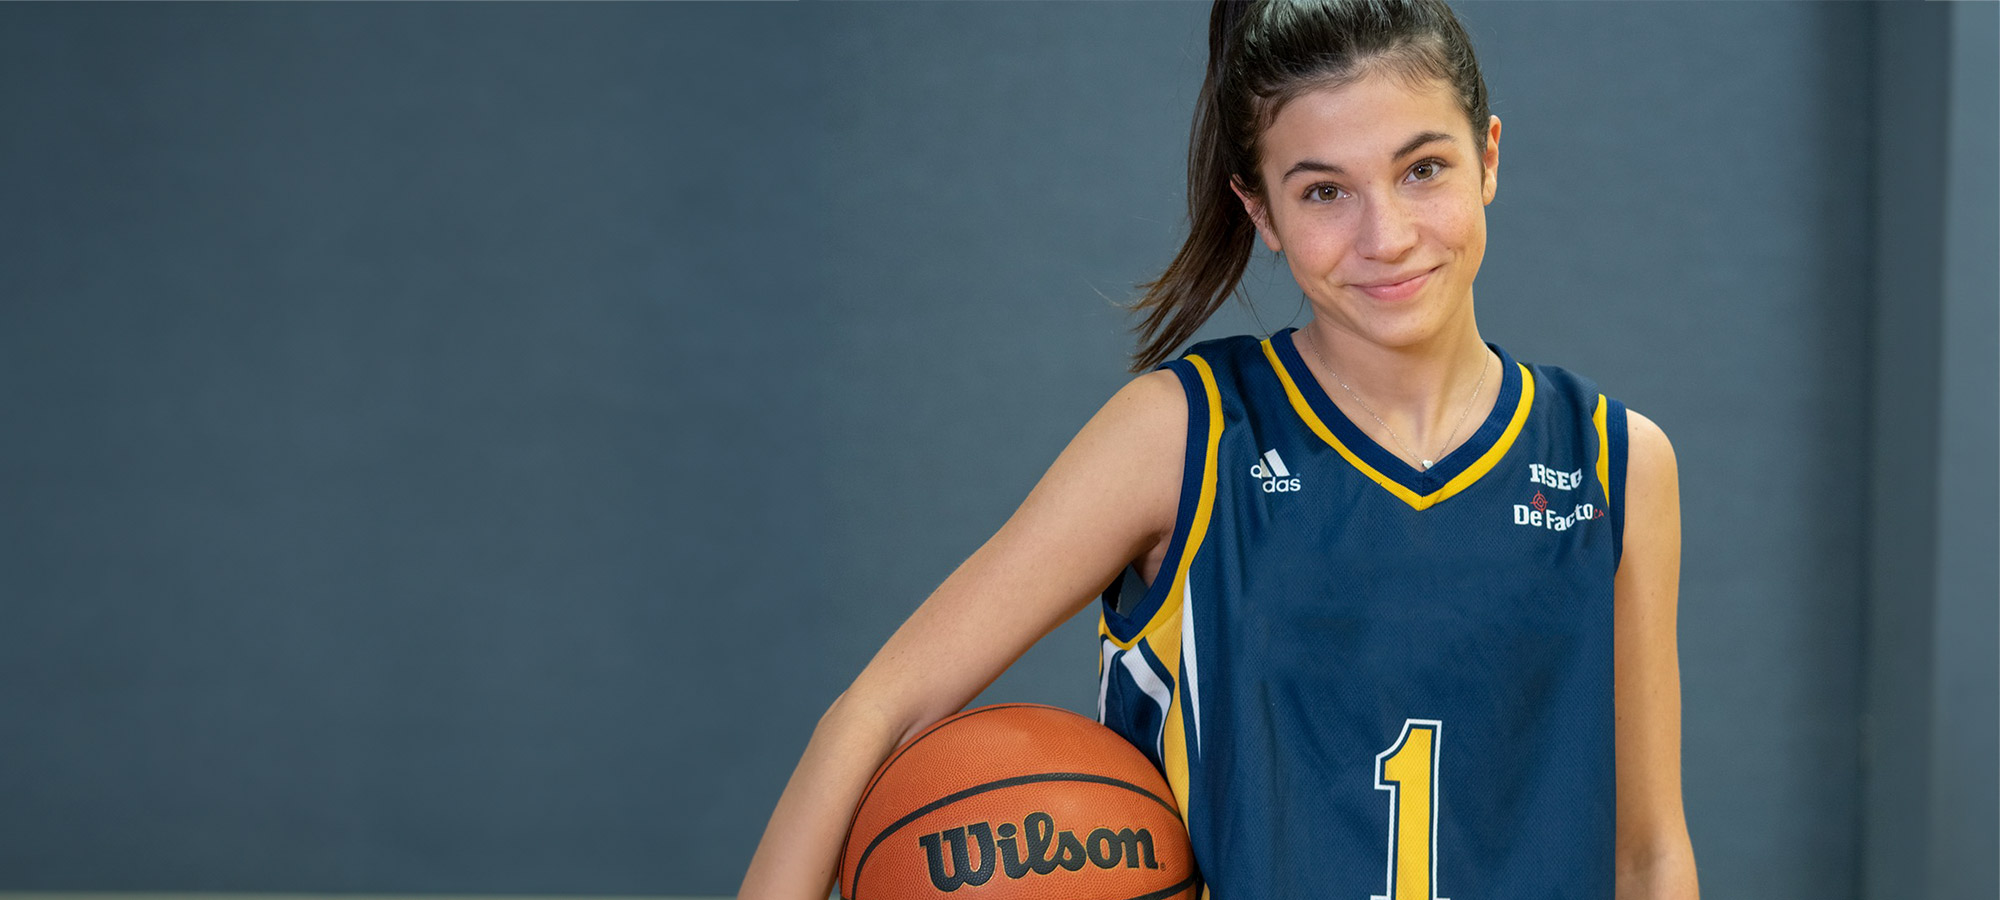 Une jeune joueuse de basketball en uniforme avec un ballon